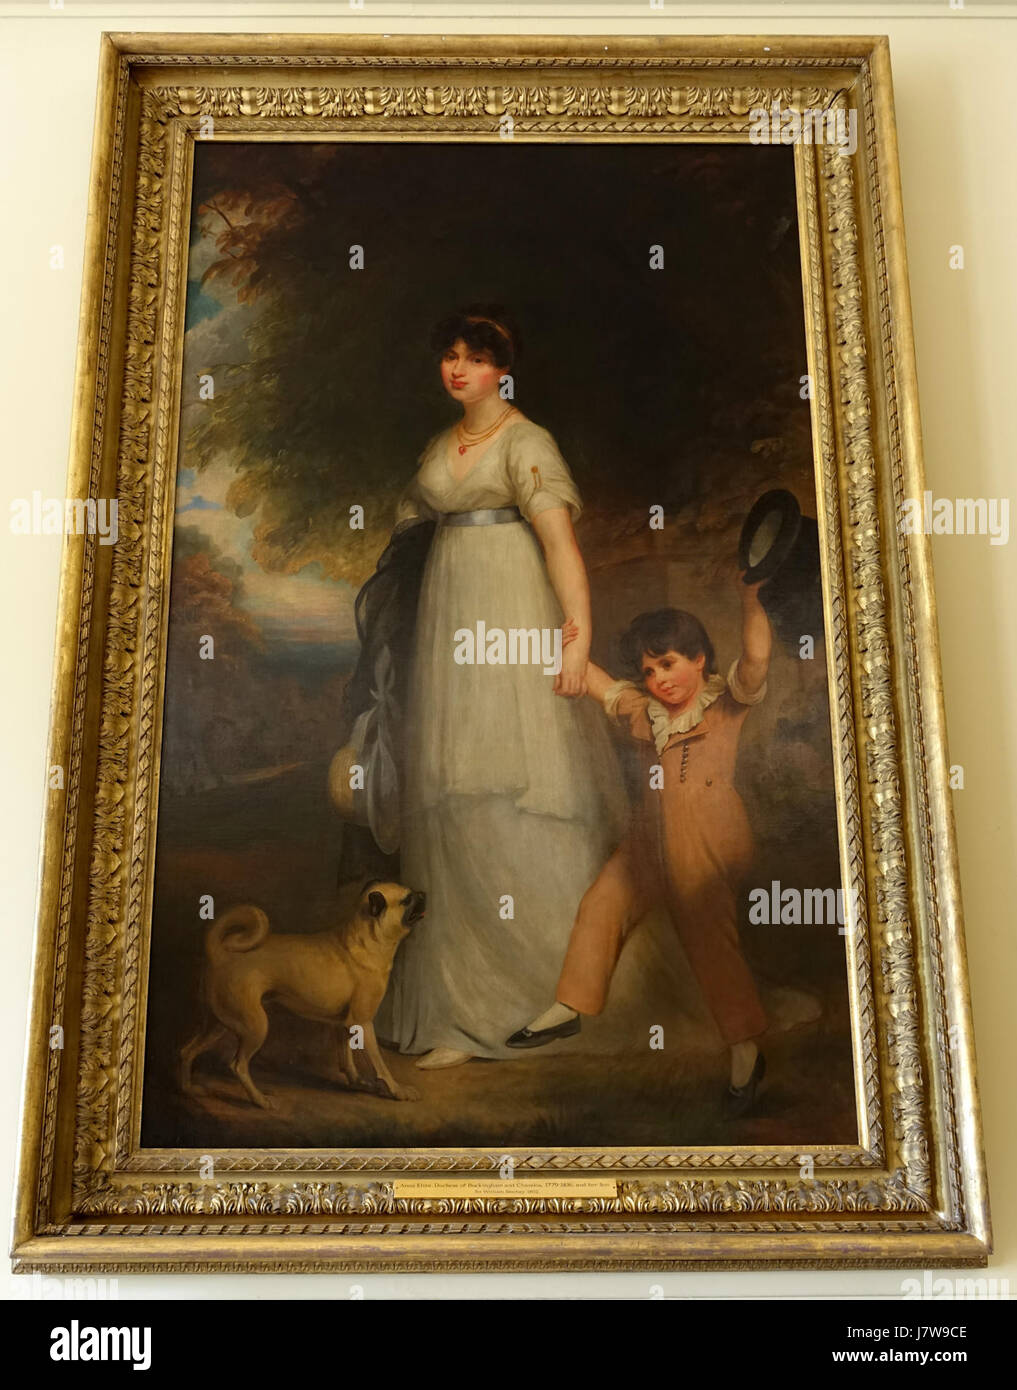 Anna Eliza, Herzogin von Buckingham und Chandos und ihr Sohn, von Sir William Beachey, 1802, Öl auf Leinwand Stowe House Buckinghamshire, England DSC07219 Stockfoto